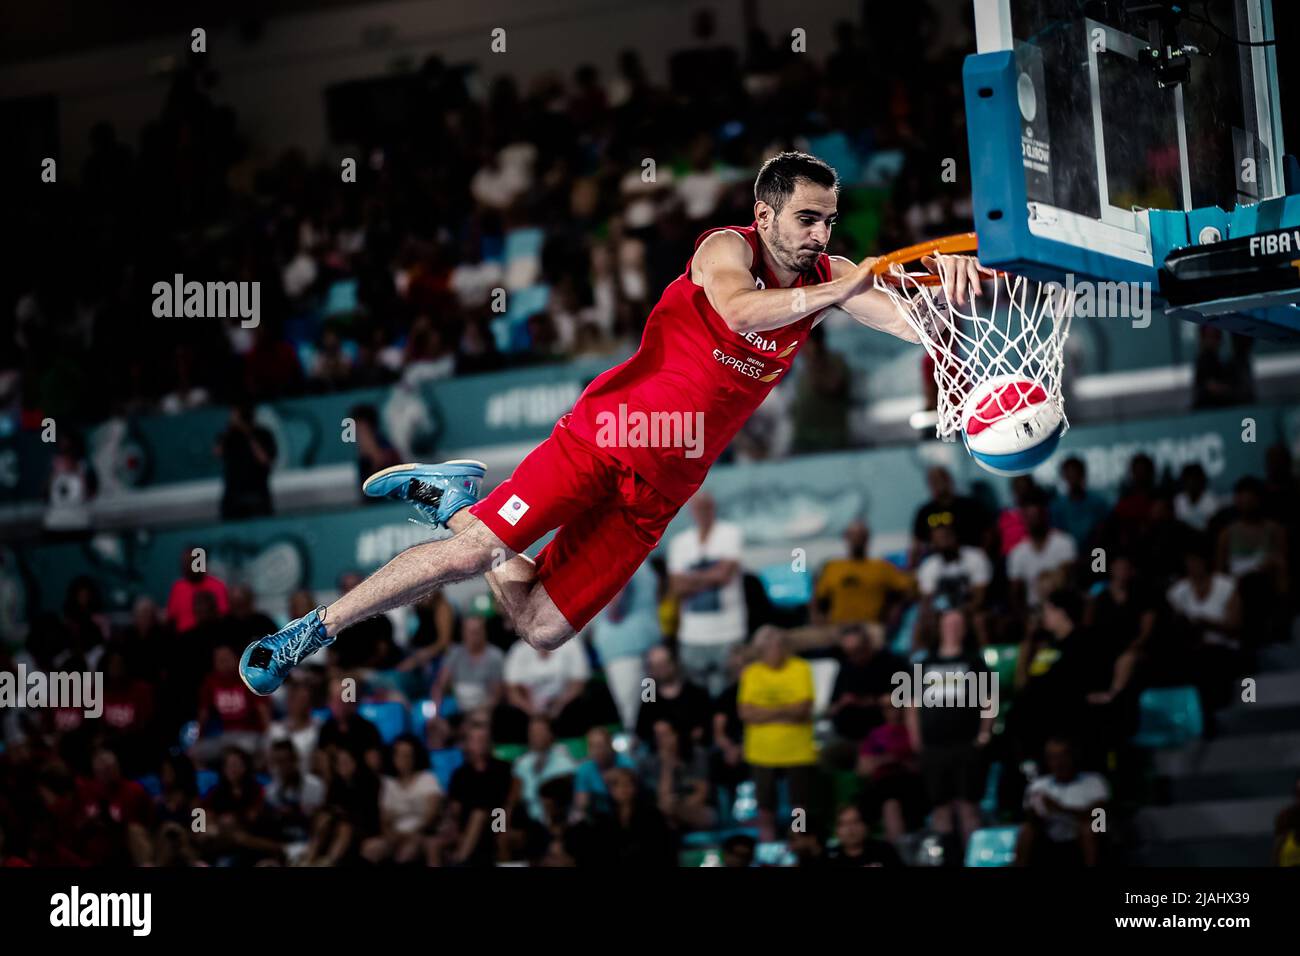 Teneriffa, Spanien, 23. September 2018: Basketballspieler macht während einer akrobatischen Basketballshow einen Slam Dunk Stockfoto